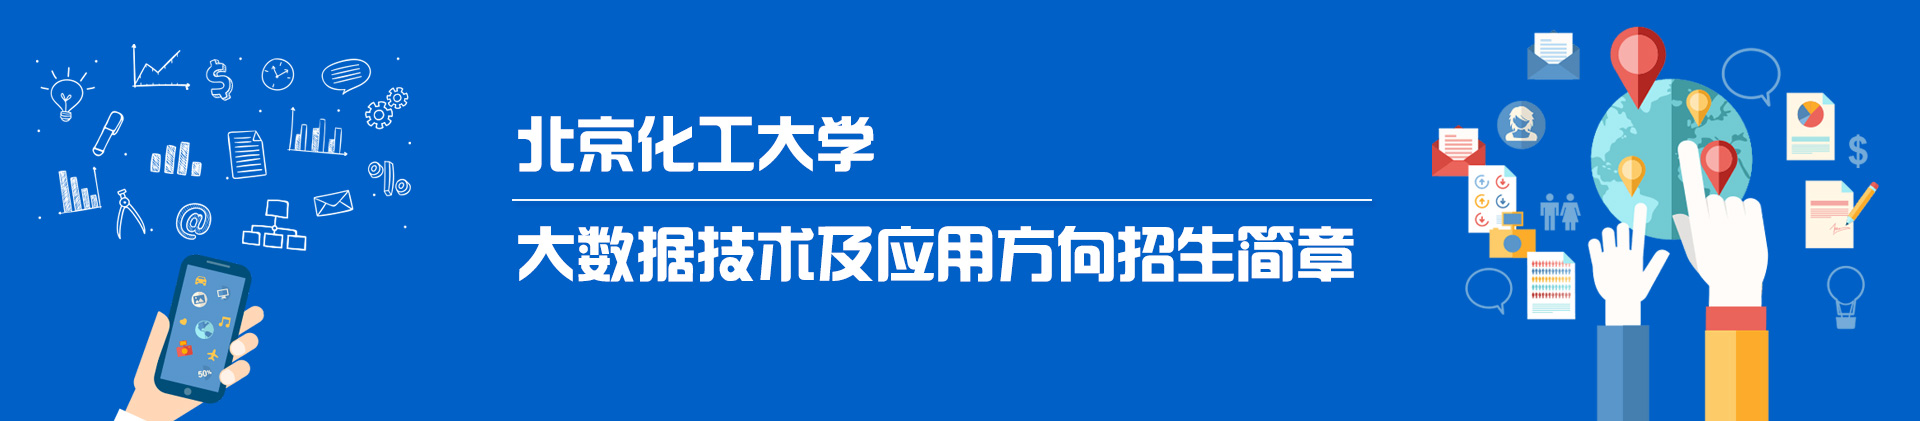 北京化工大学大数据技术及应用方向在职研究生招生简章